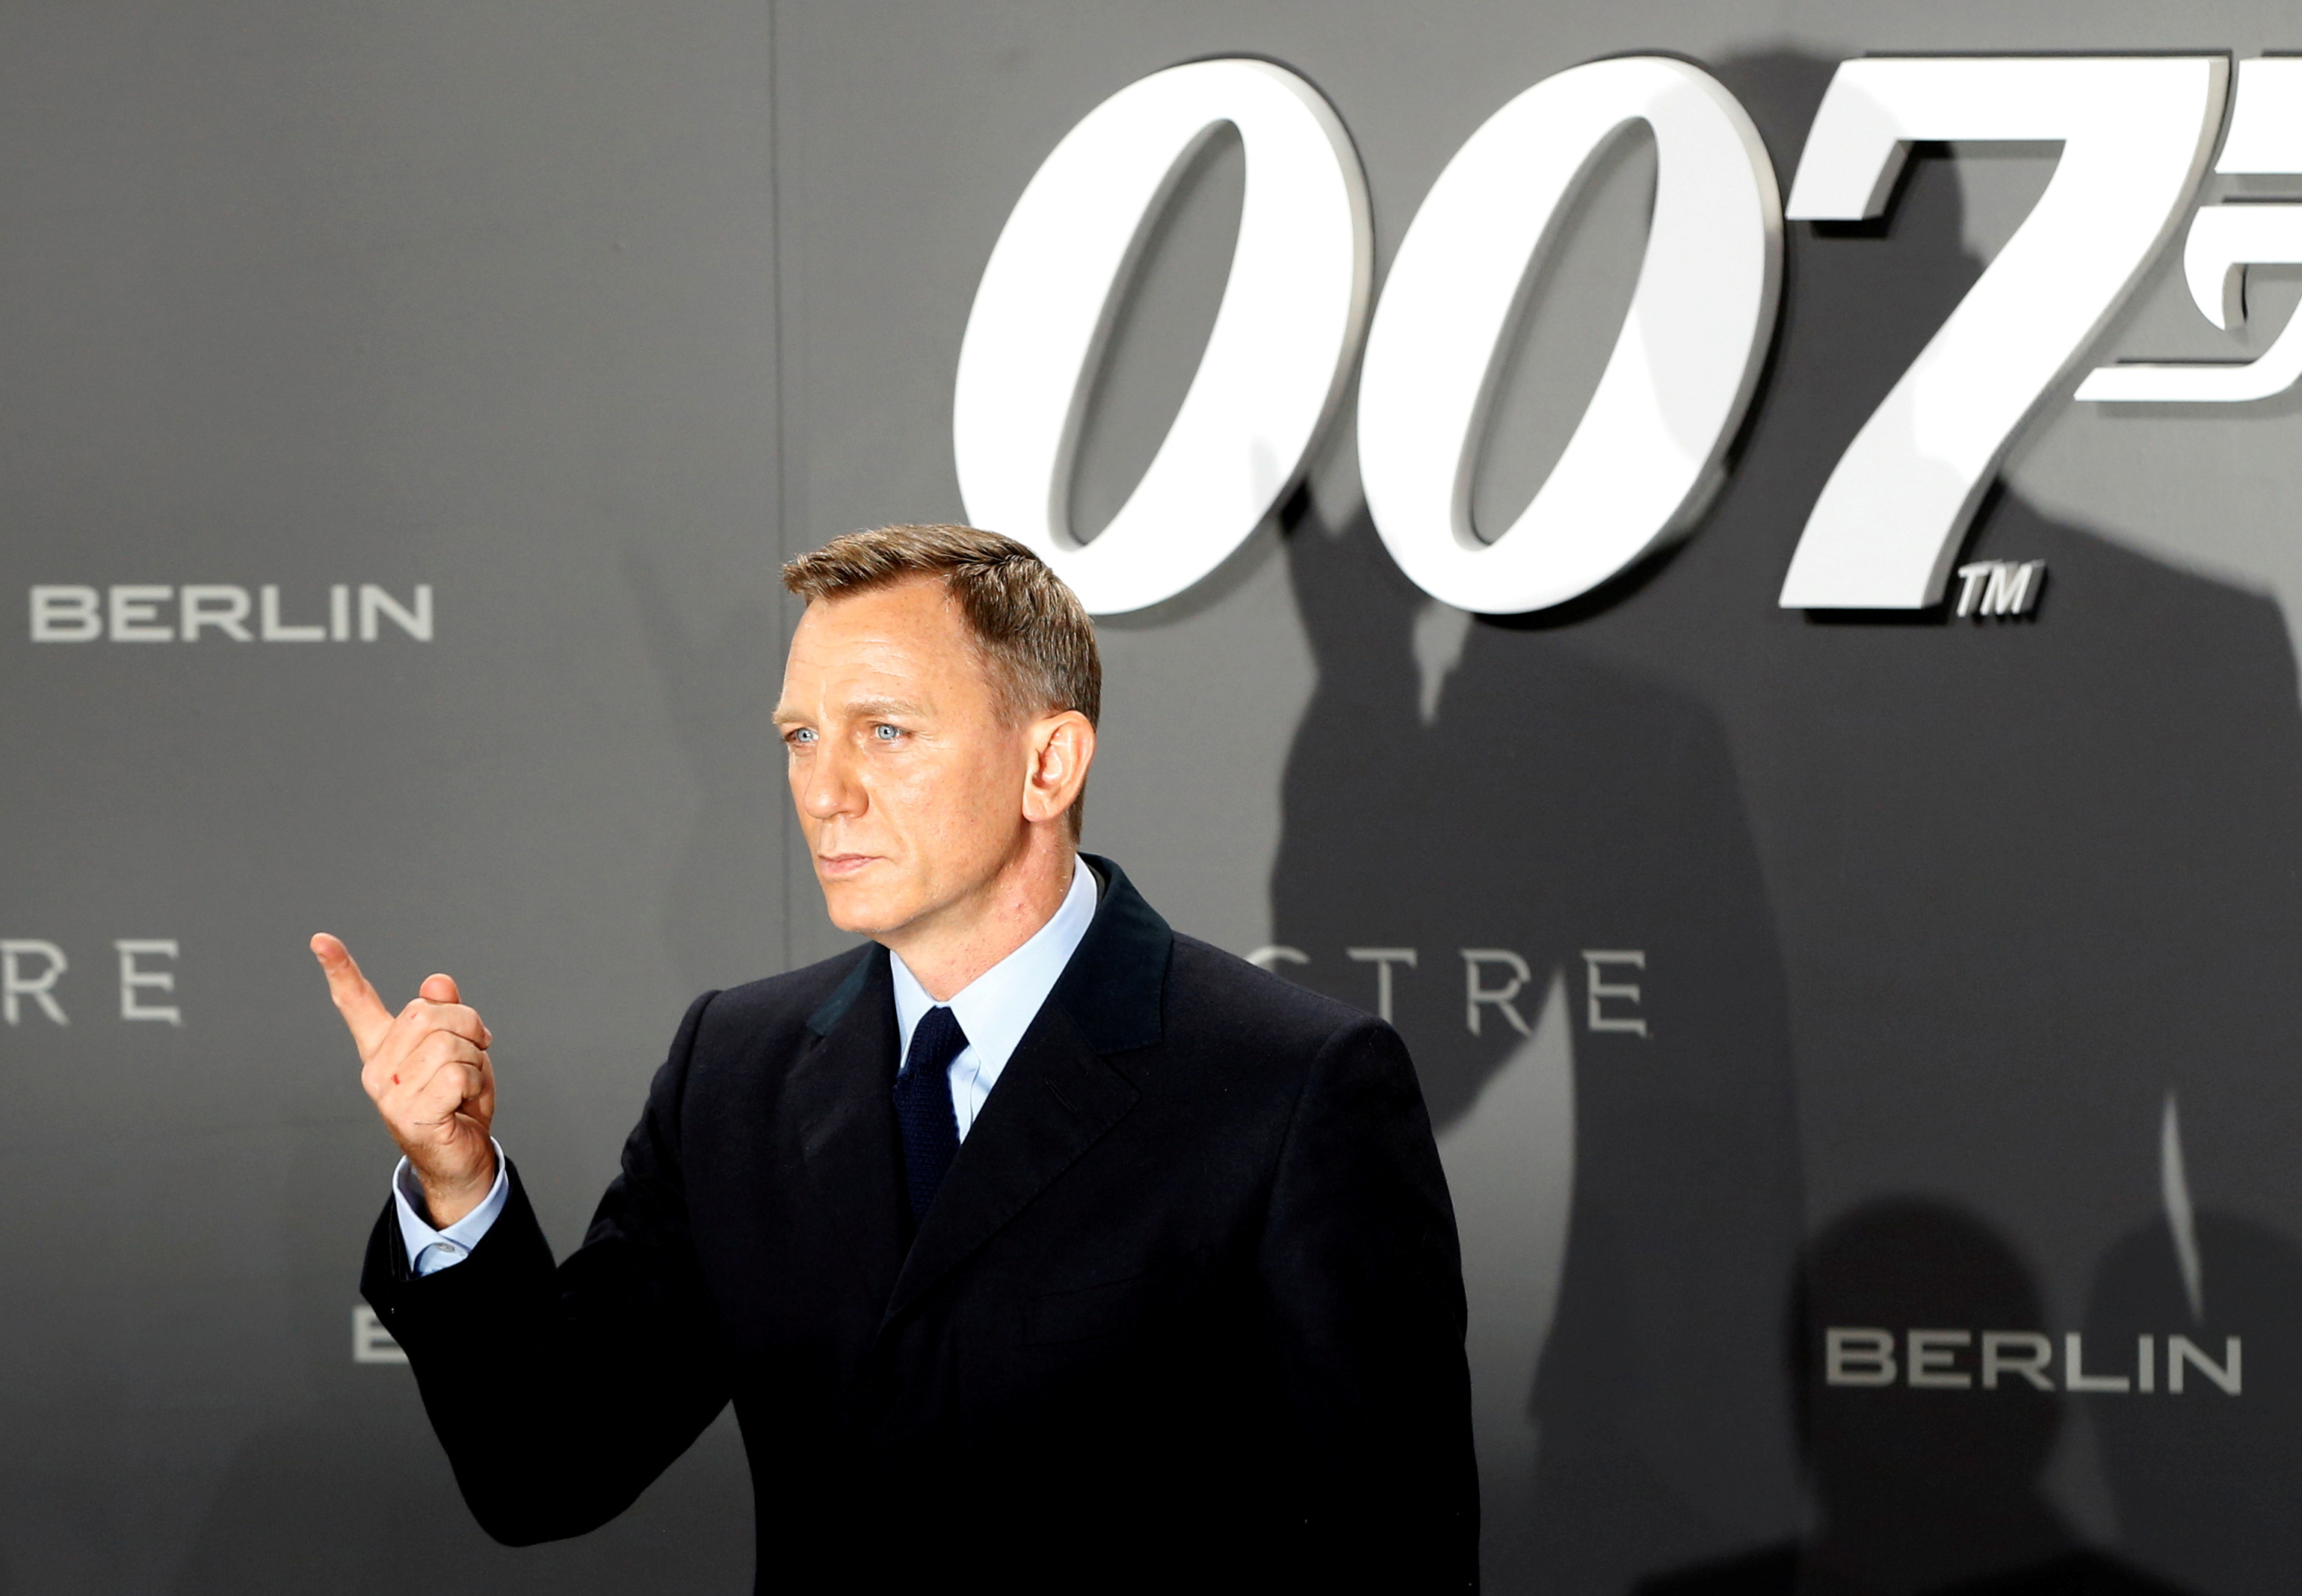 james bond 007 free movies